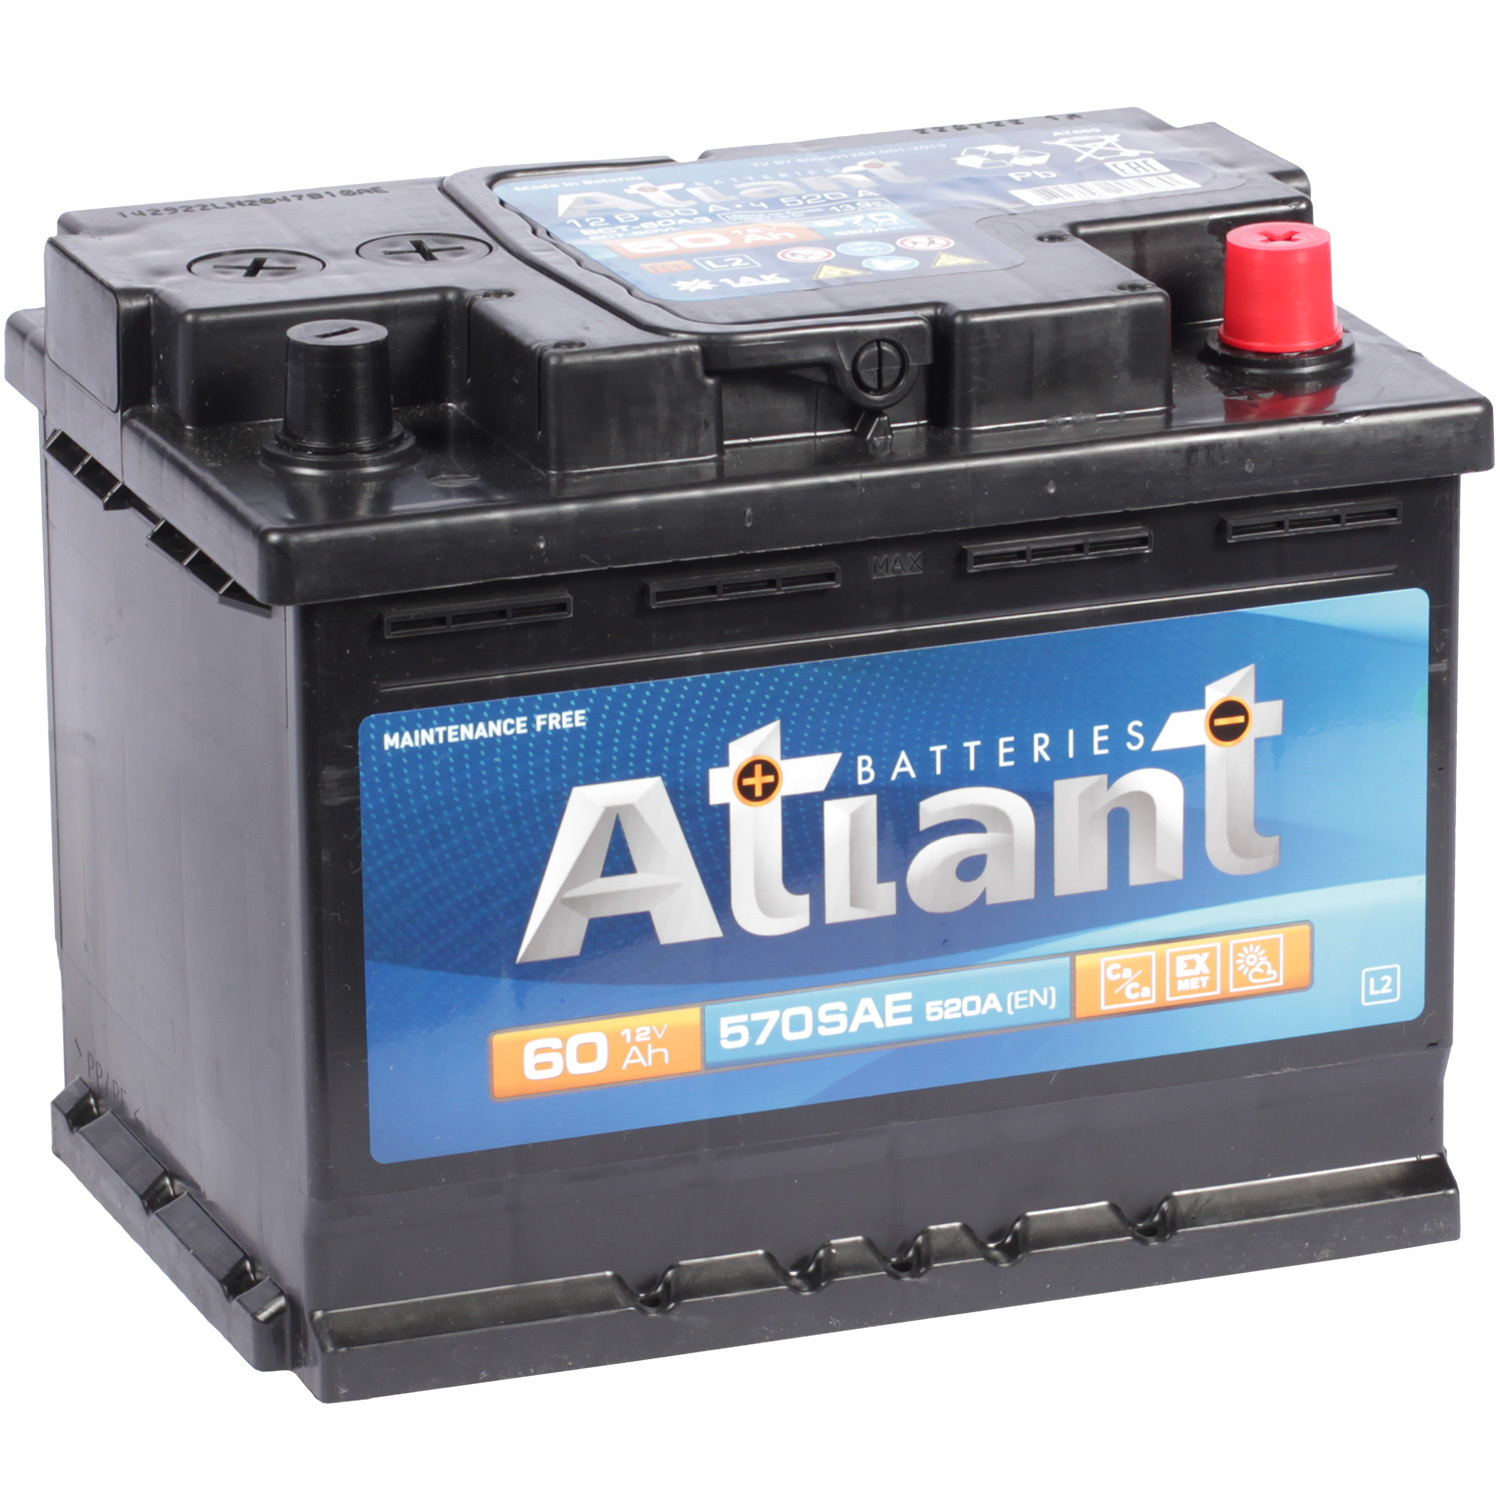 Atlant Автомобильный аккумулятор Atlant 60 Ач обратная полярность L2 energizer автомобильный аккумулятор energizer 60 ач обратная полярность l2